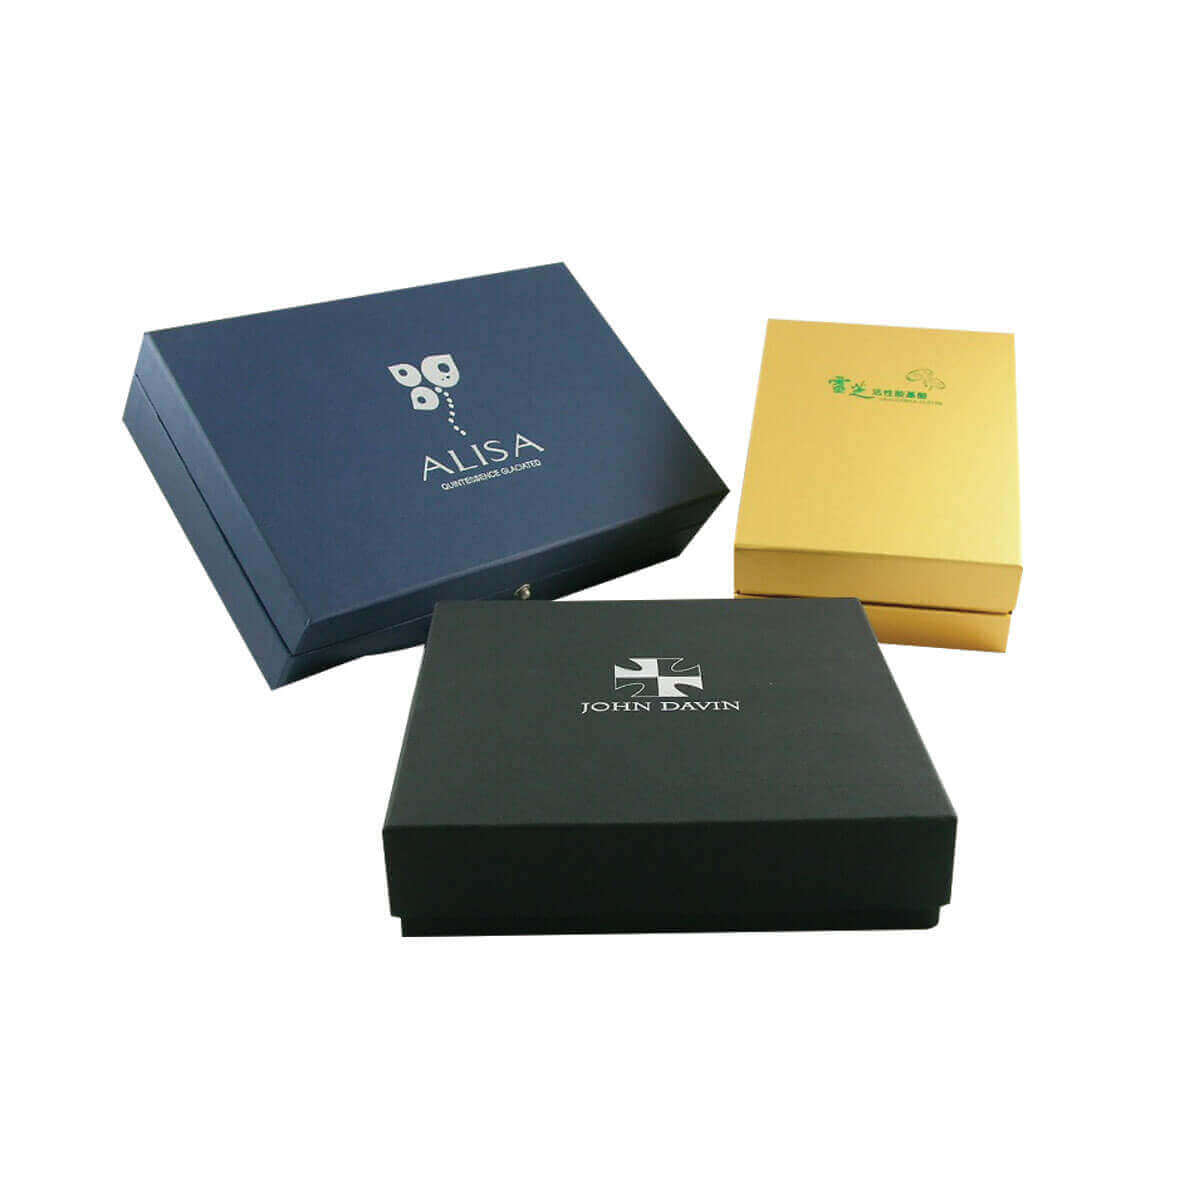 Custom Design Jewelry Christmas Handmade Paper Gift Box Amazon Packaging Box  Cosmetic Box Game Box Storage Cardboard Paper Box  China Paper Box and Gift  Box price  MadeinChinacom